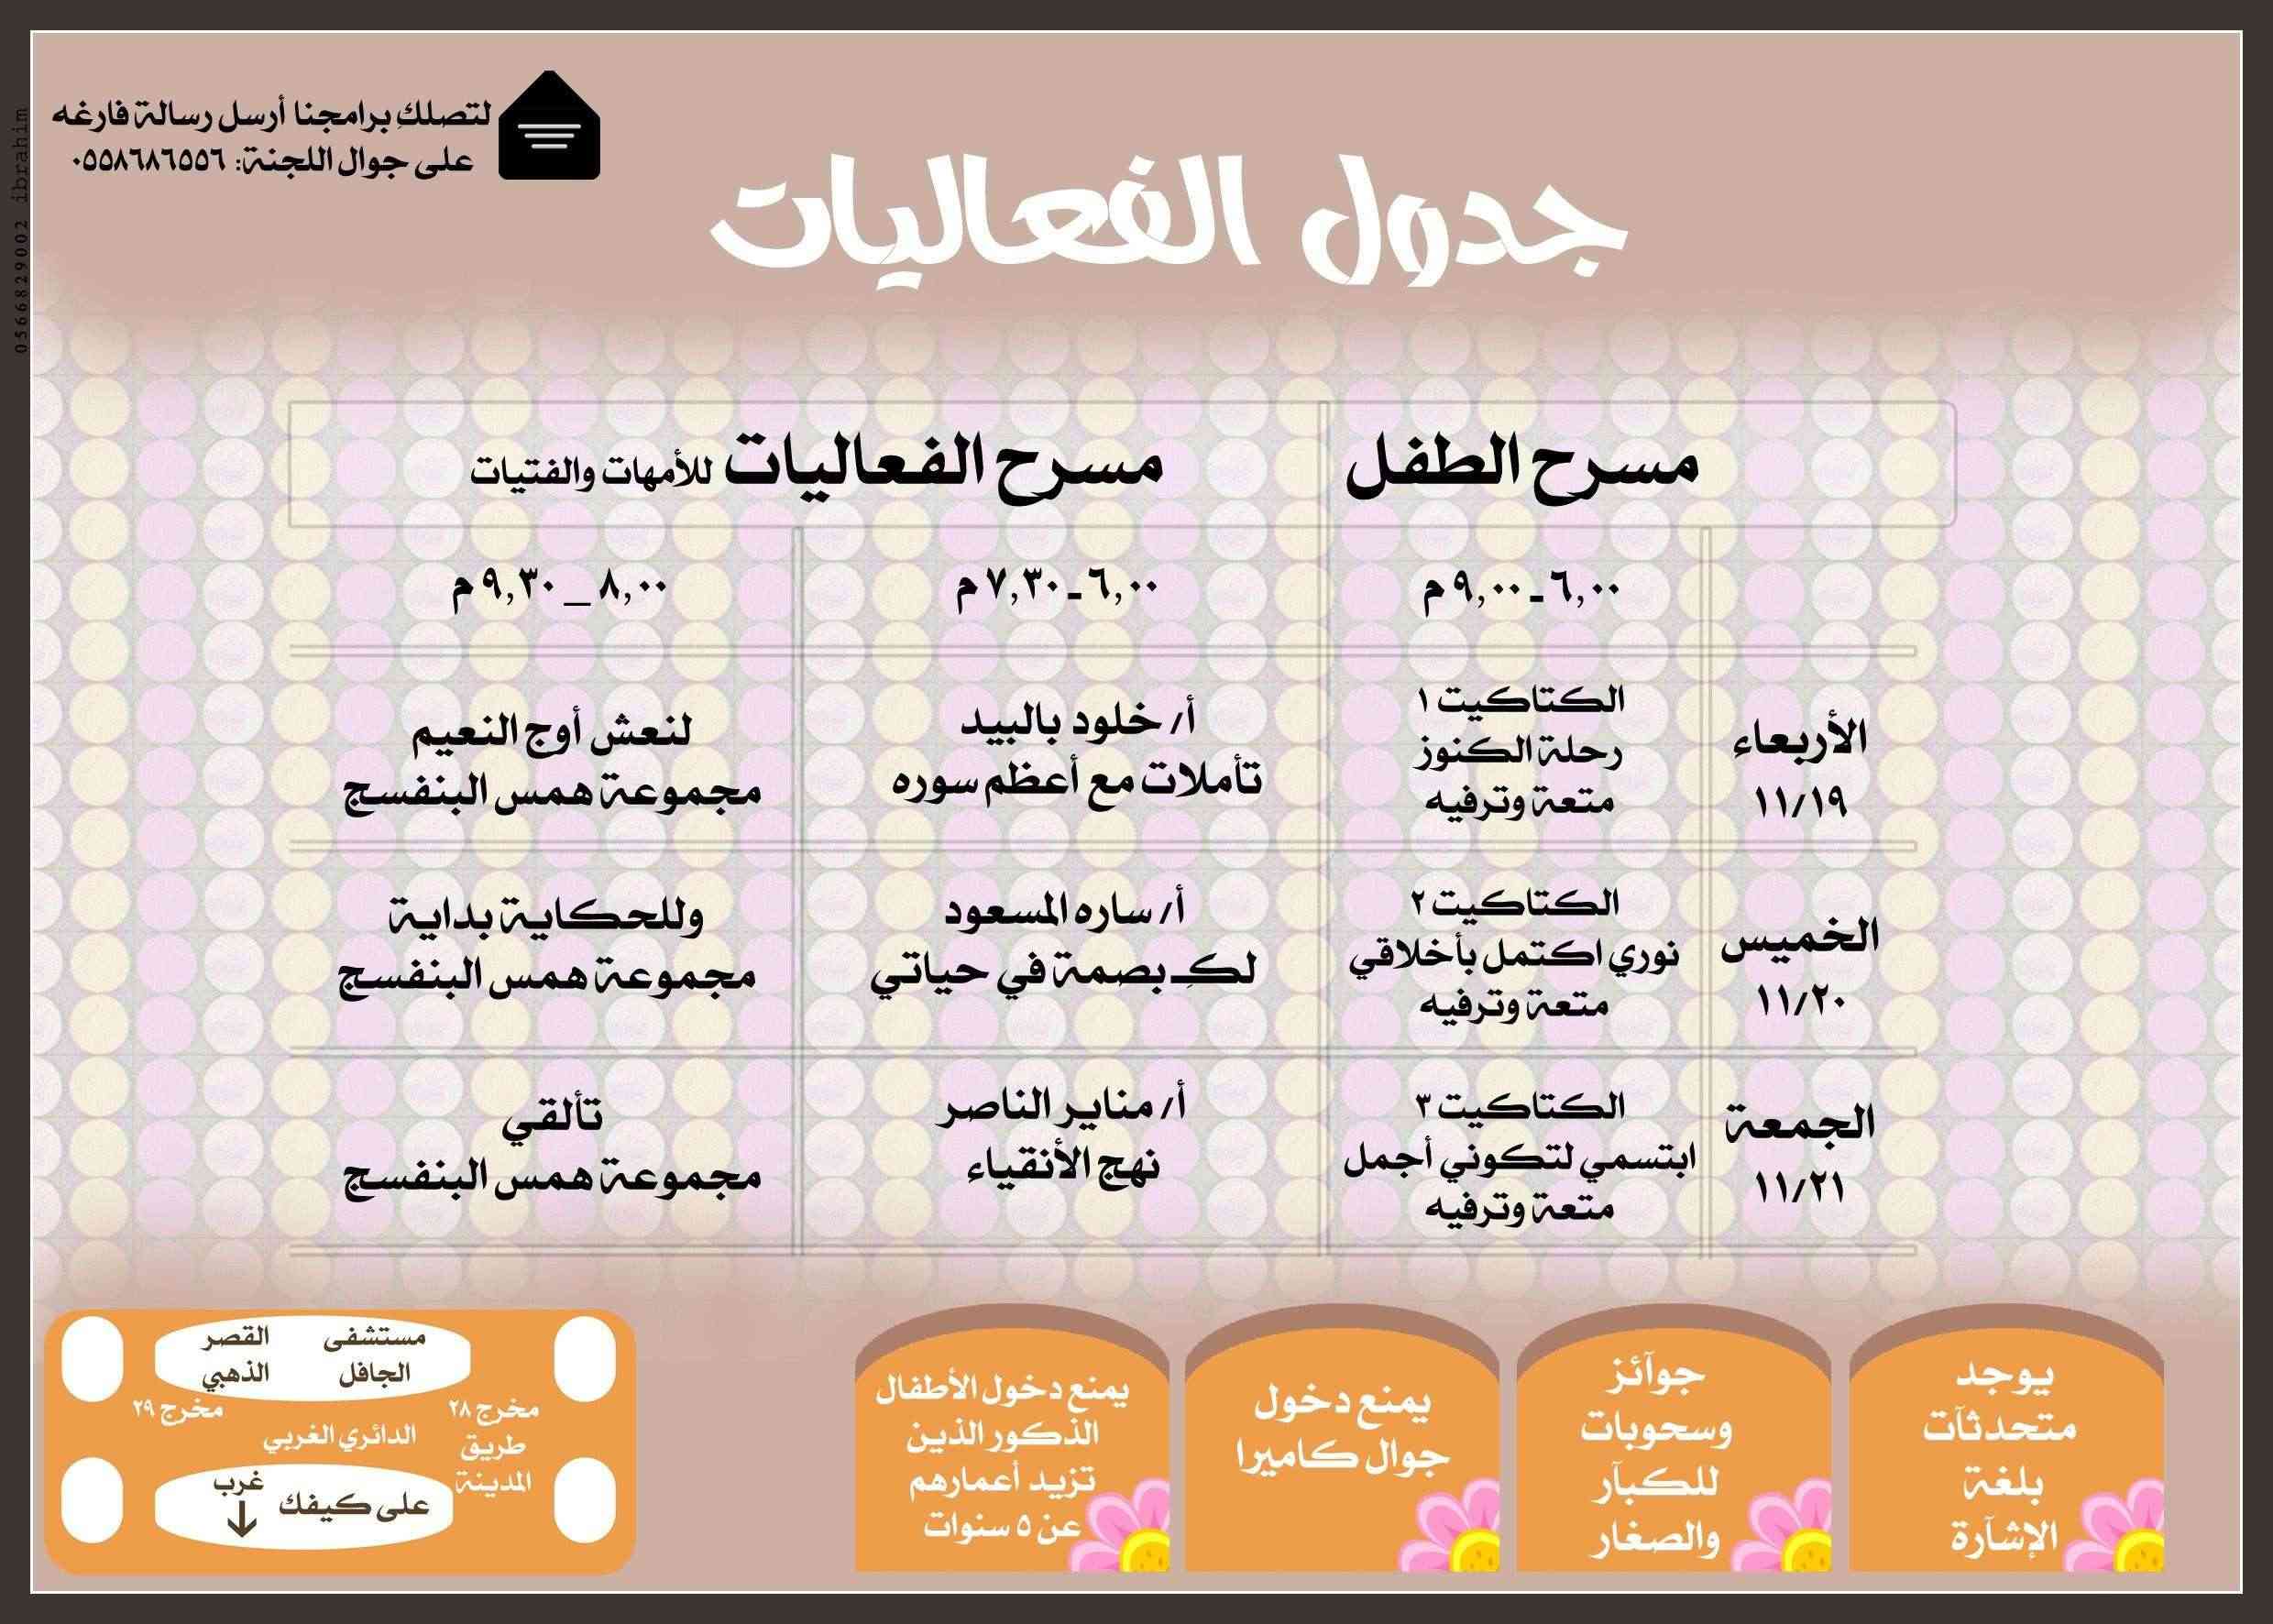 ملتقى ( أجمل الأمسيات ) للنساء والأطفال بغرب الرياض ( تسوقي واستفيدي)  Jb128710